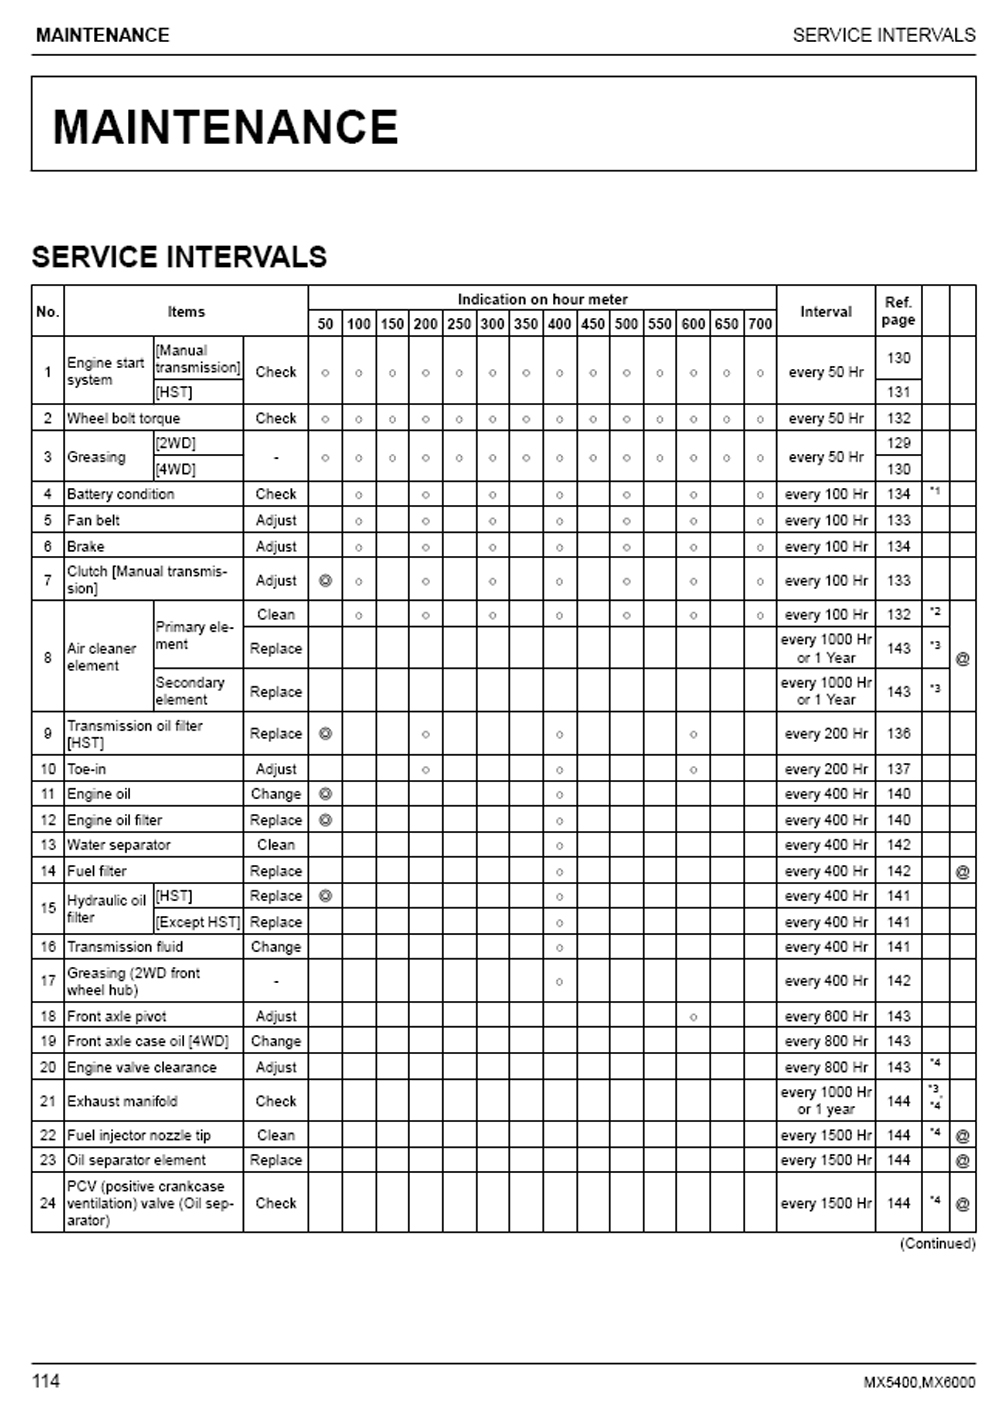 service_schedule.jpg